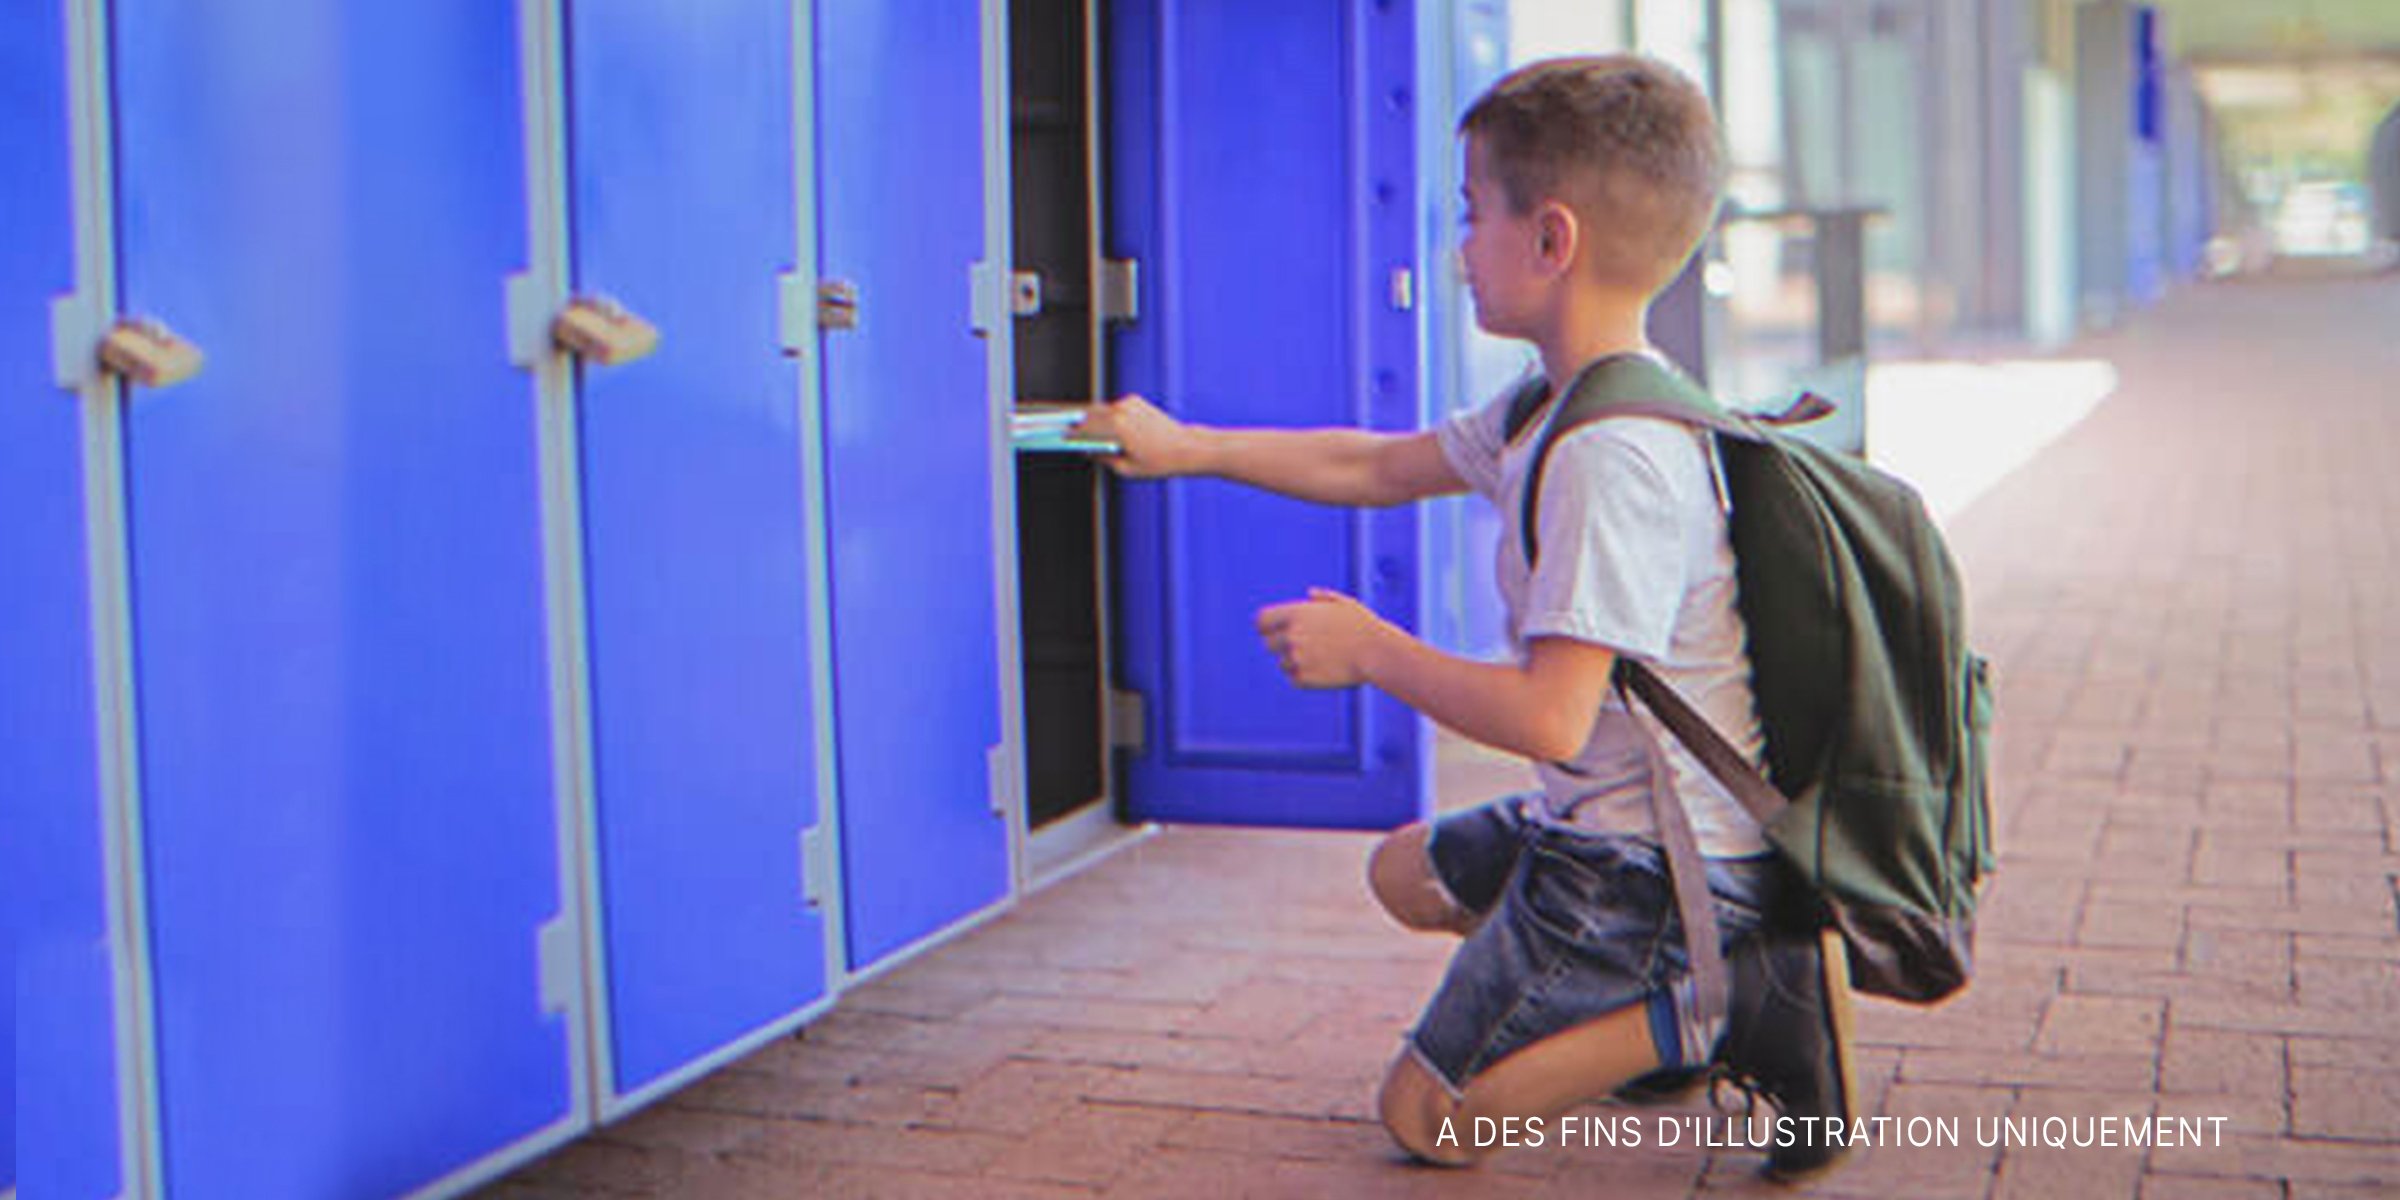 Un garçon récupère des objets dans son casier d'école | Source : Shutterstock 